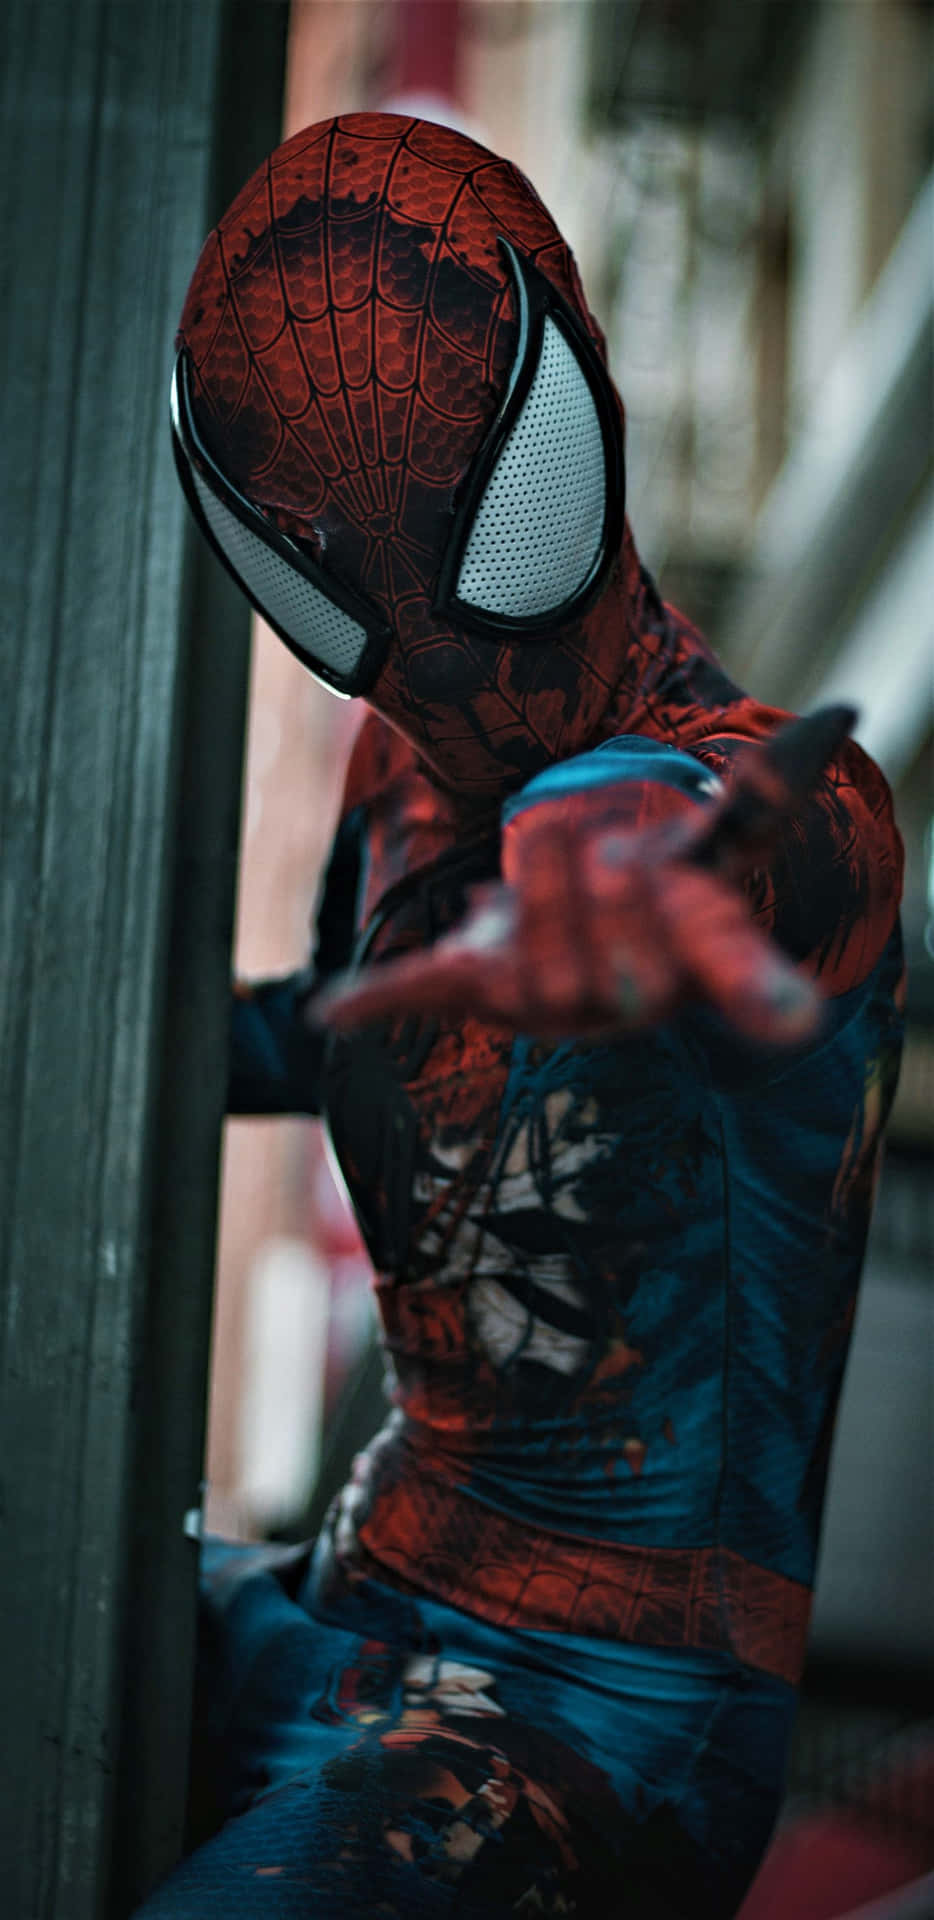 Pixel3xl Marvel Bakgrund Spiderman Cosplayer